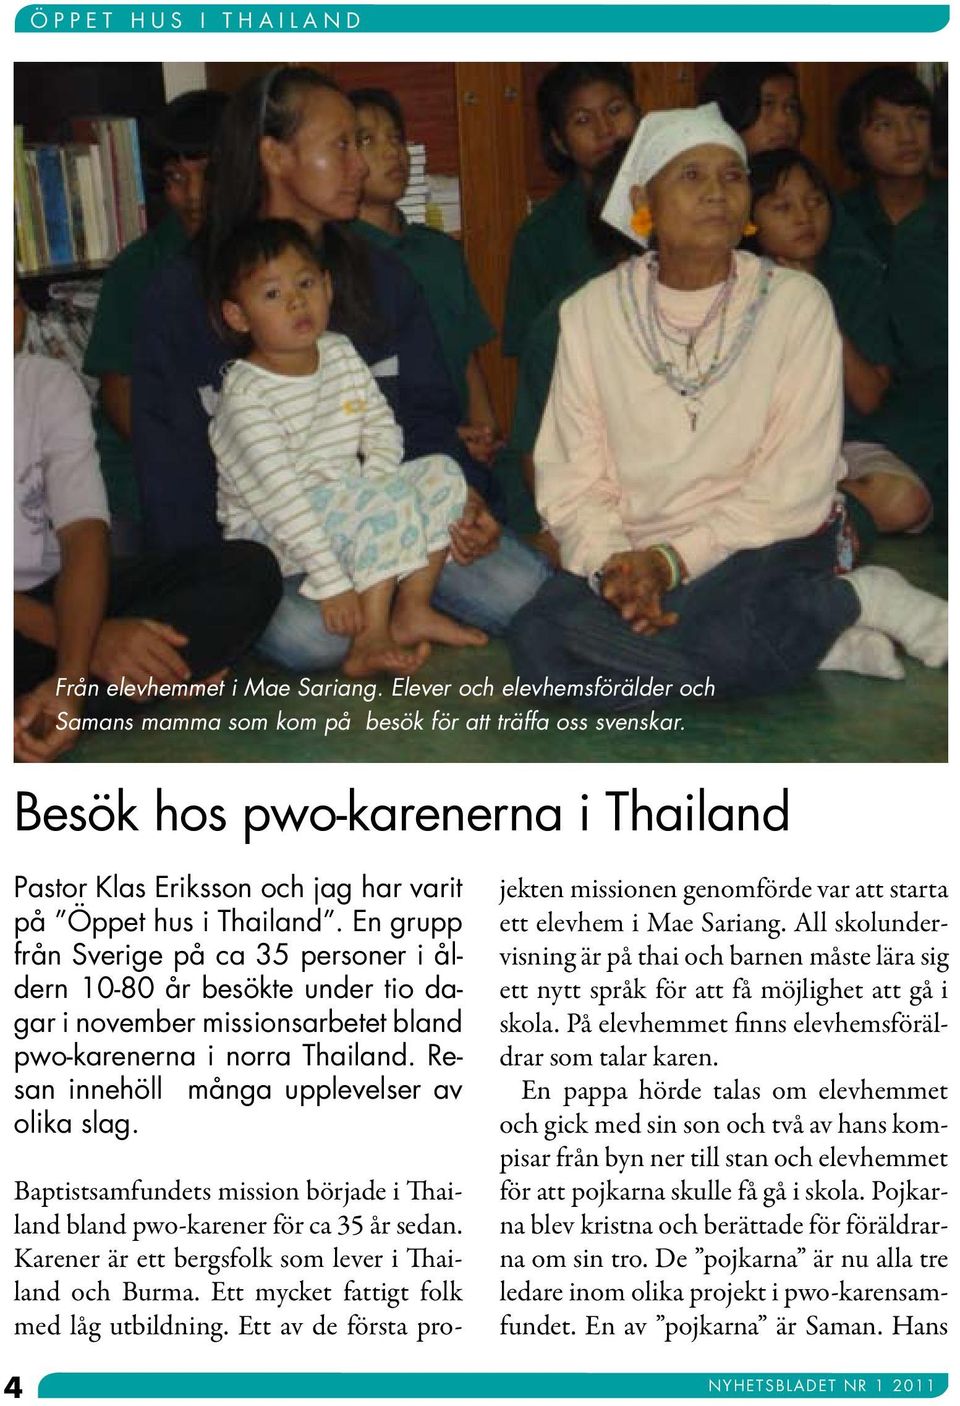 En grupp från Sverige på ca 35 personer i åldern 10-80 år besökte under tio dagar i november missionsarbetet bland pwo-karenerna i norra Thailand. Resan innehöll många upplevelser av olika slag.